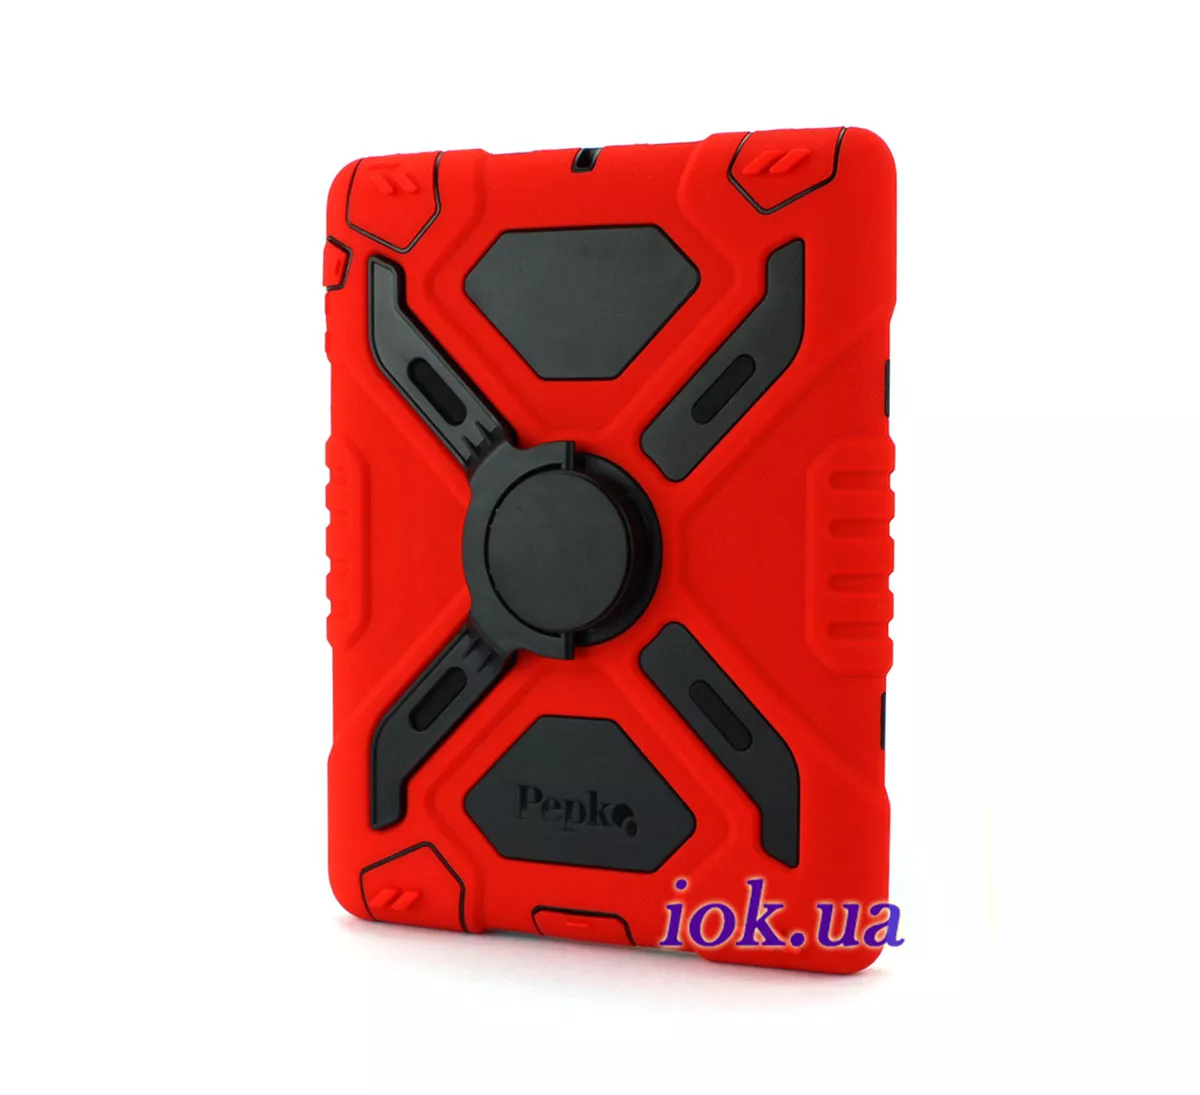 Защитный чехол для iPad Mini 1/2 - Pepkoo, красный